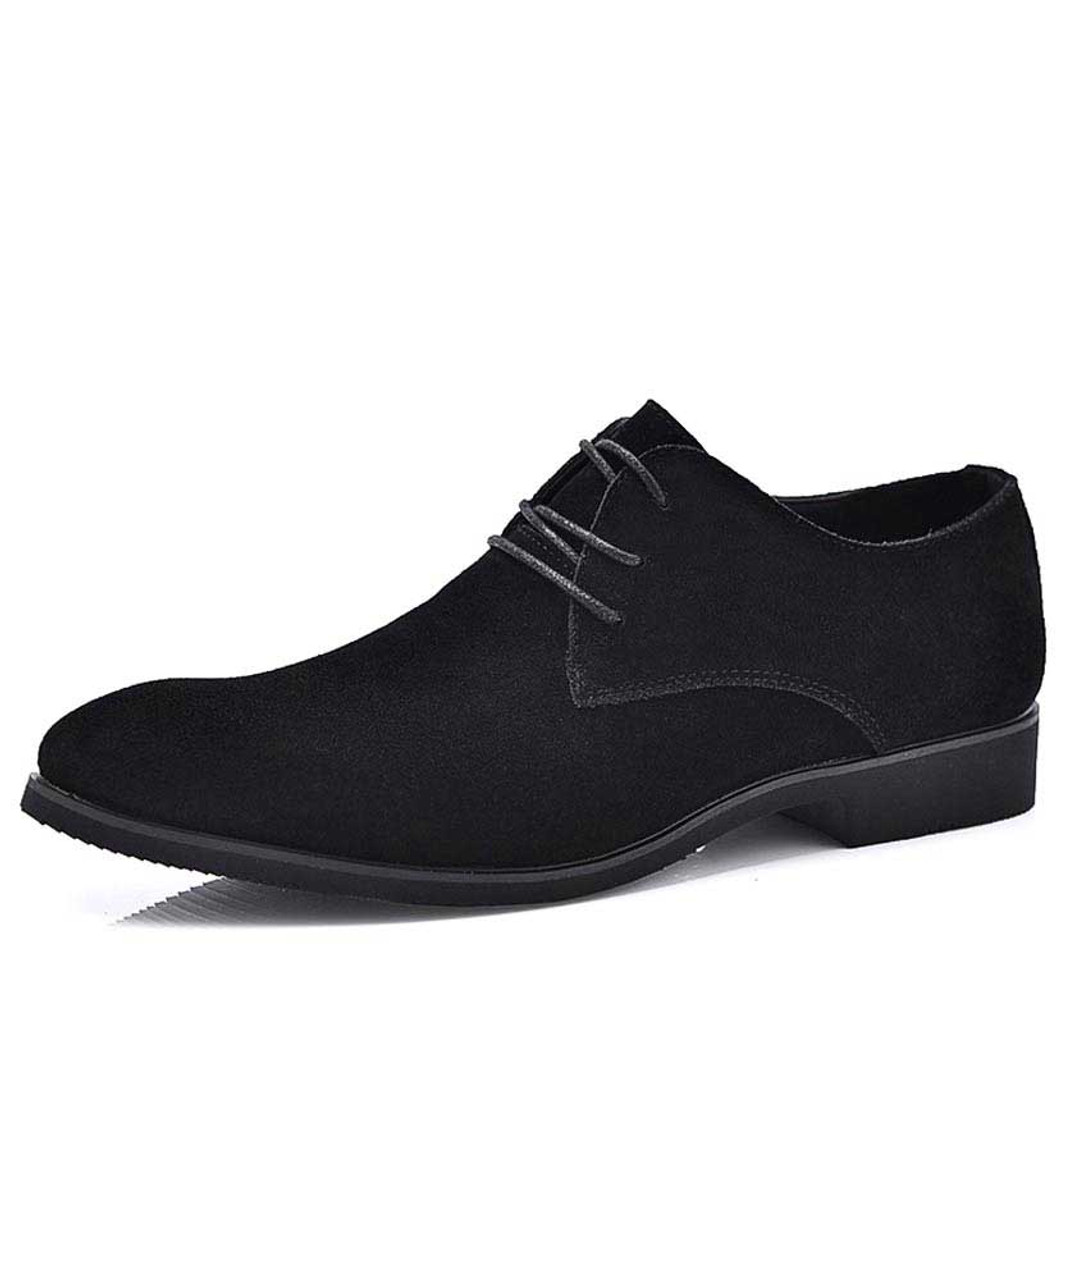 mens dress shoes black suede